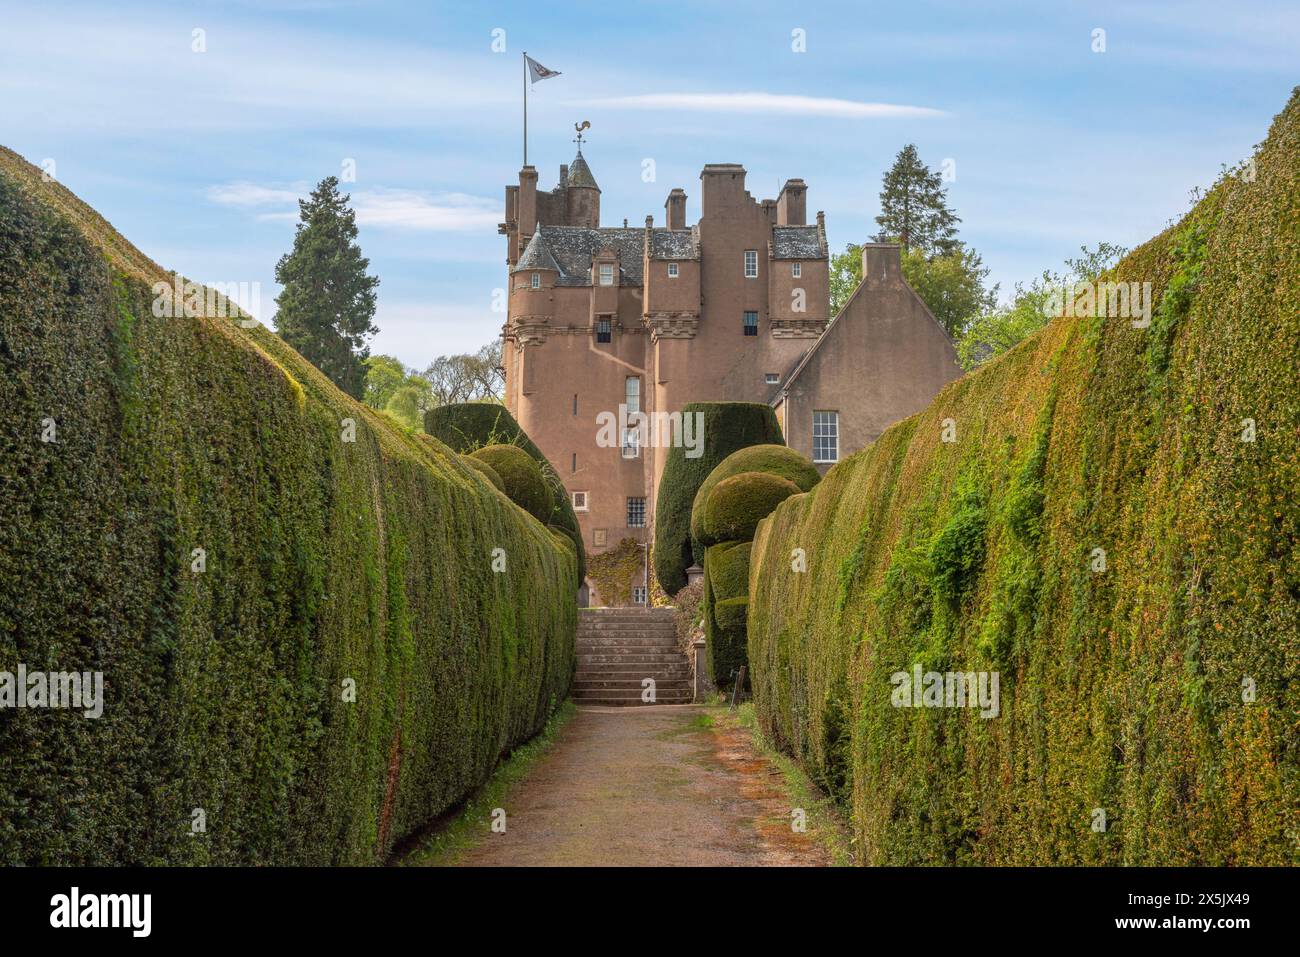 Le château de Crathes, une tour écossaise classique située dans l'Aberdeenshire, en Écosse, possède de charmantes tourelles et de beaux jardins. Banque D'Images